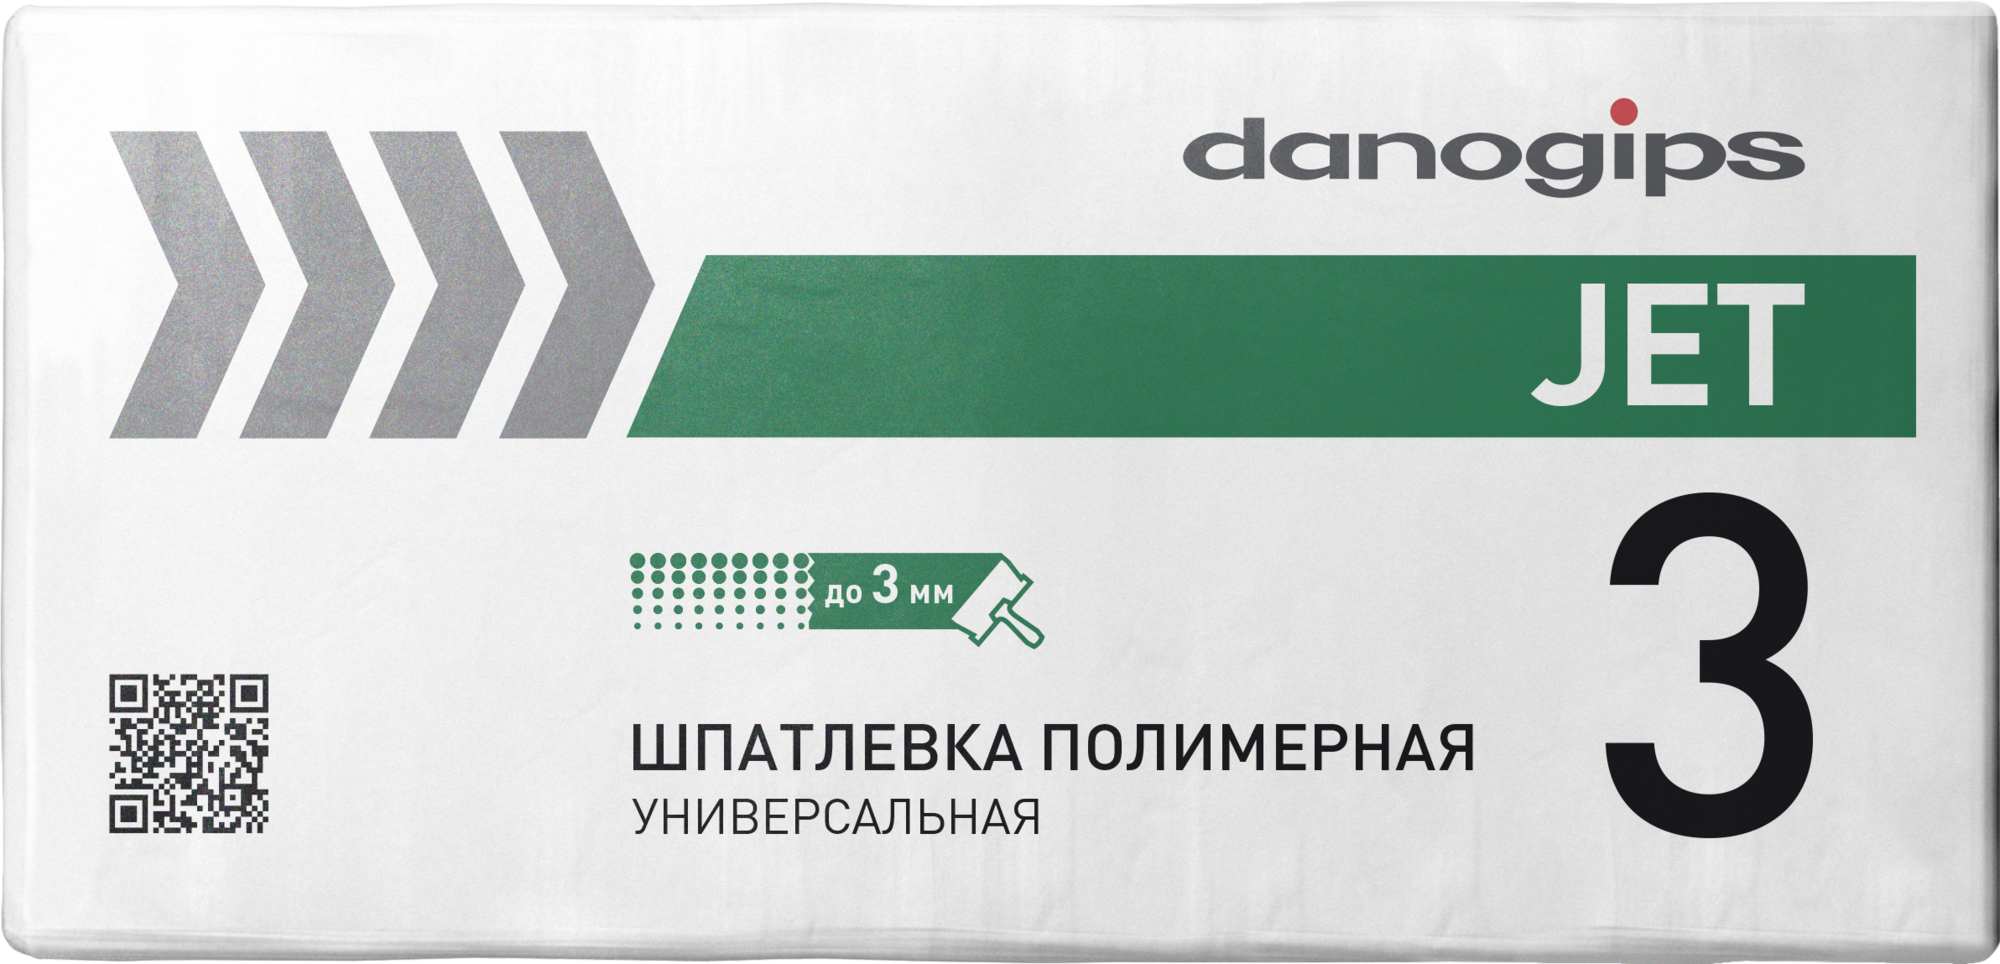 Шпаклевка полимерная Dano Jet 3 выравнивающая 20 кг (48 шт./пал.) Danogips